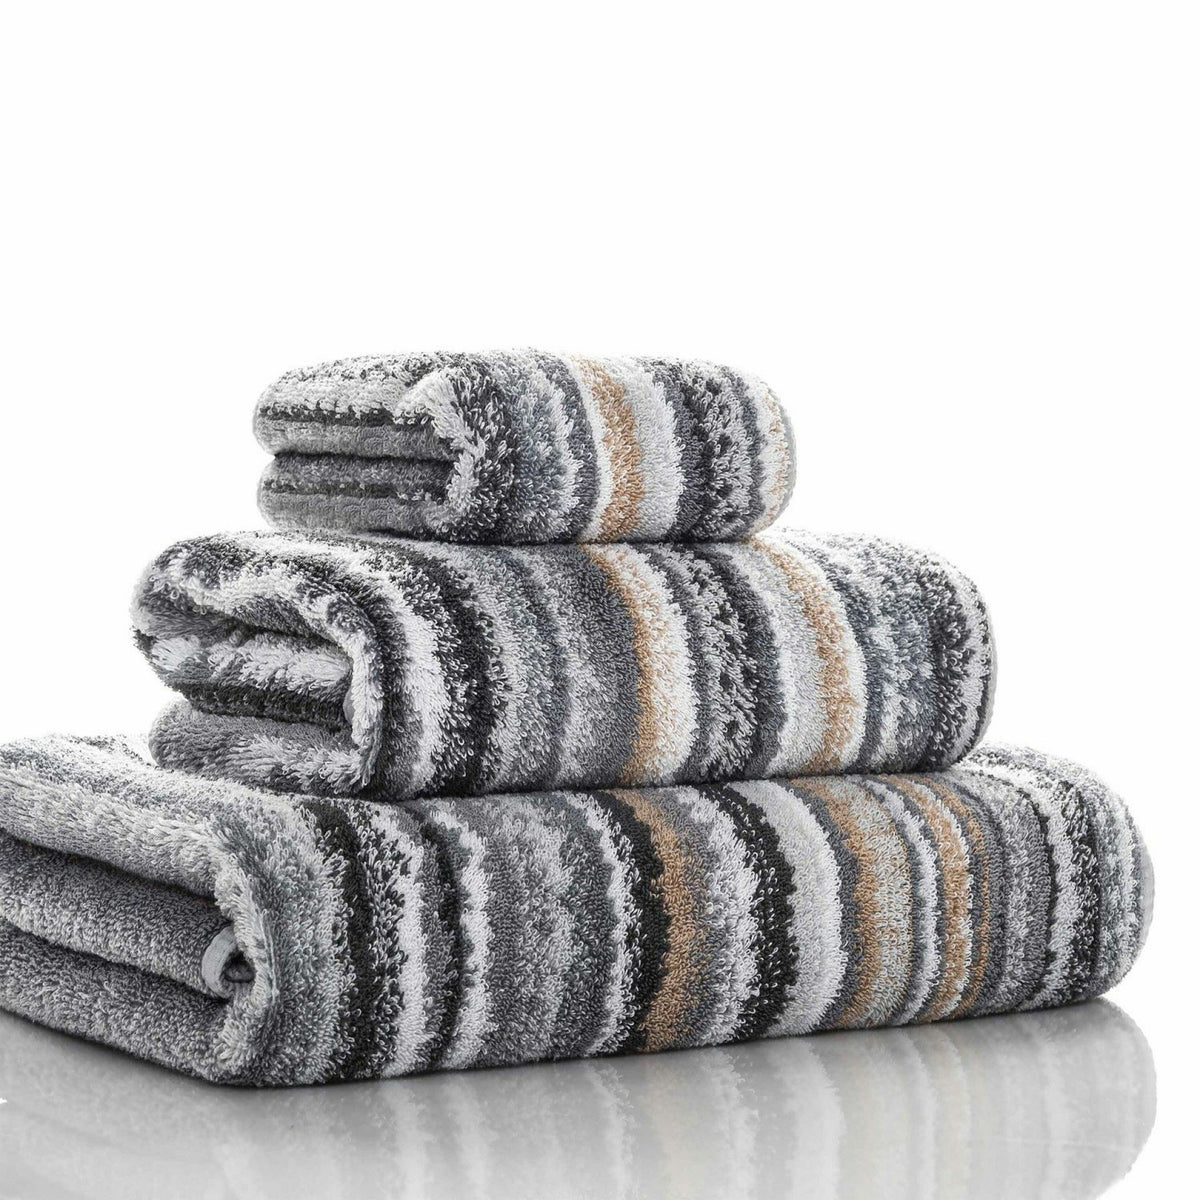 Graccioza Venice Bath Towels and Rugs Slanted Multi/Grey Fine Linens